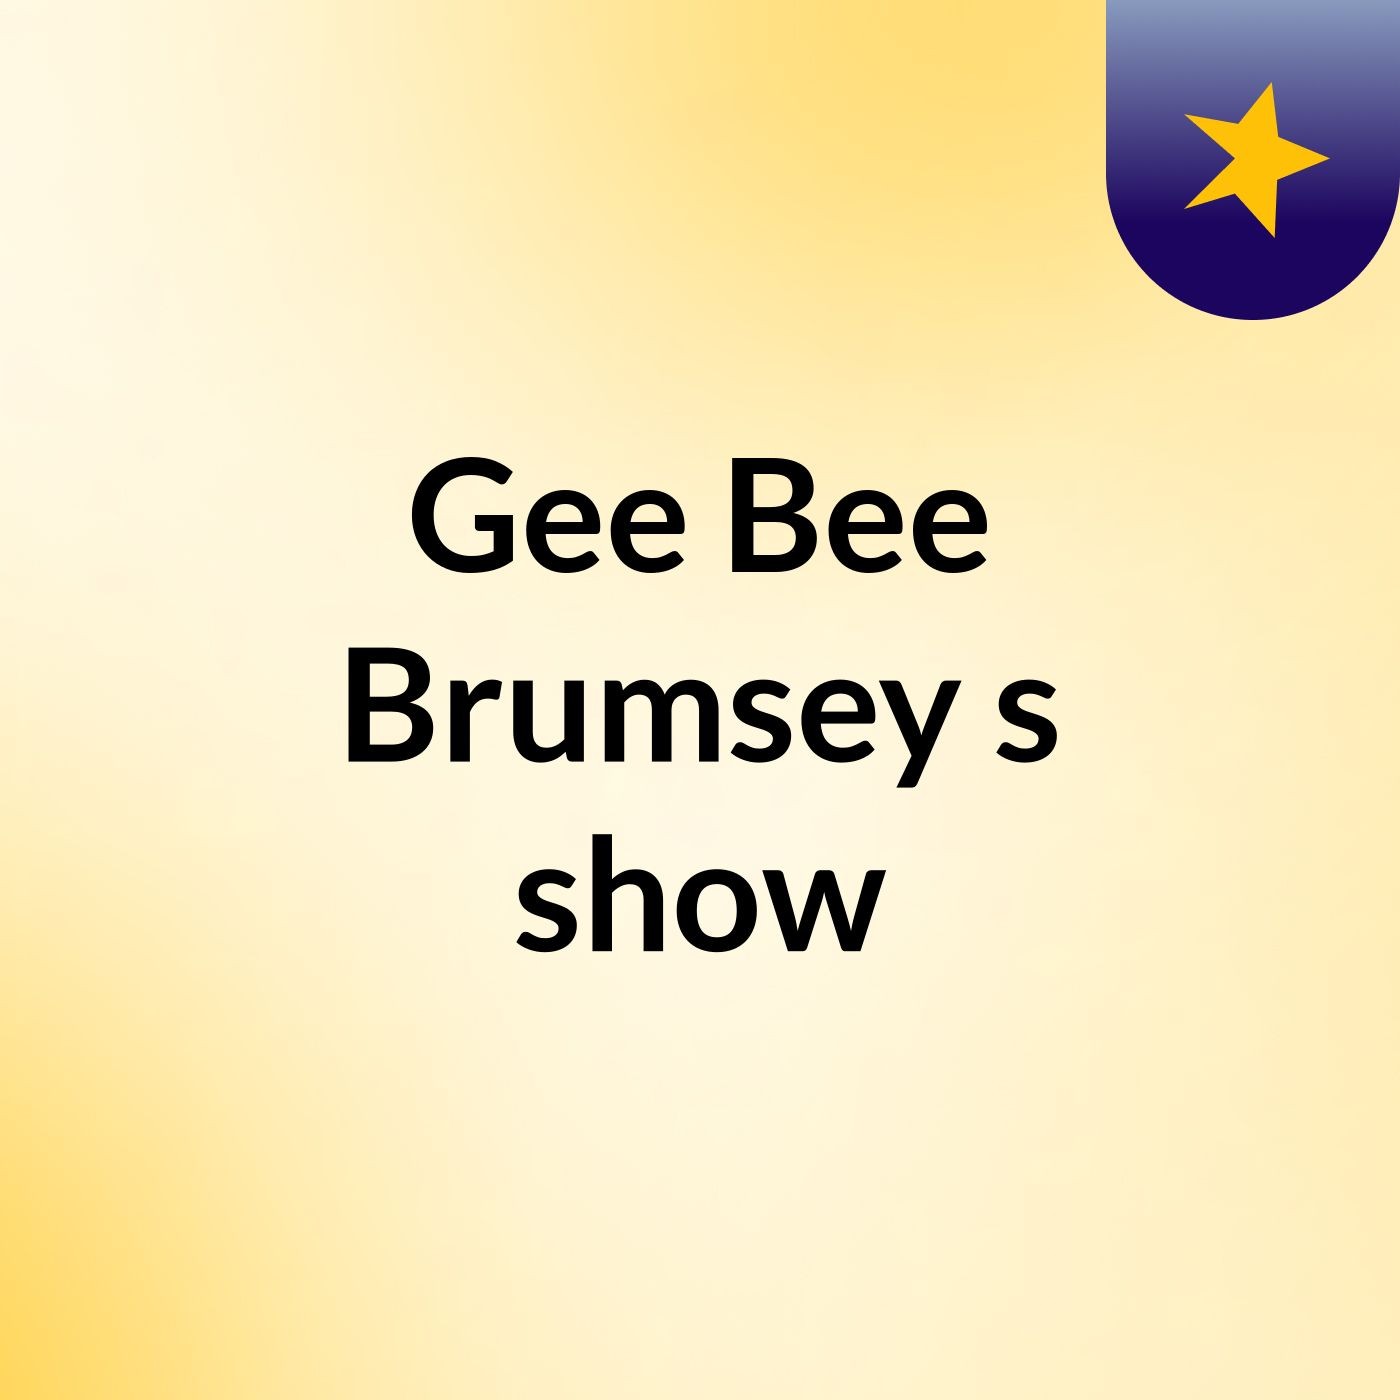 Gee Bee Brumsey's show